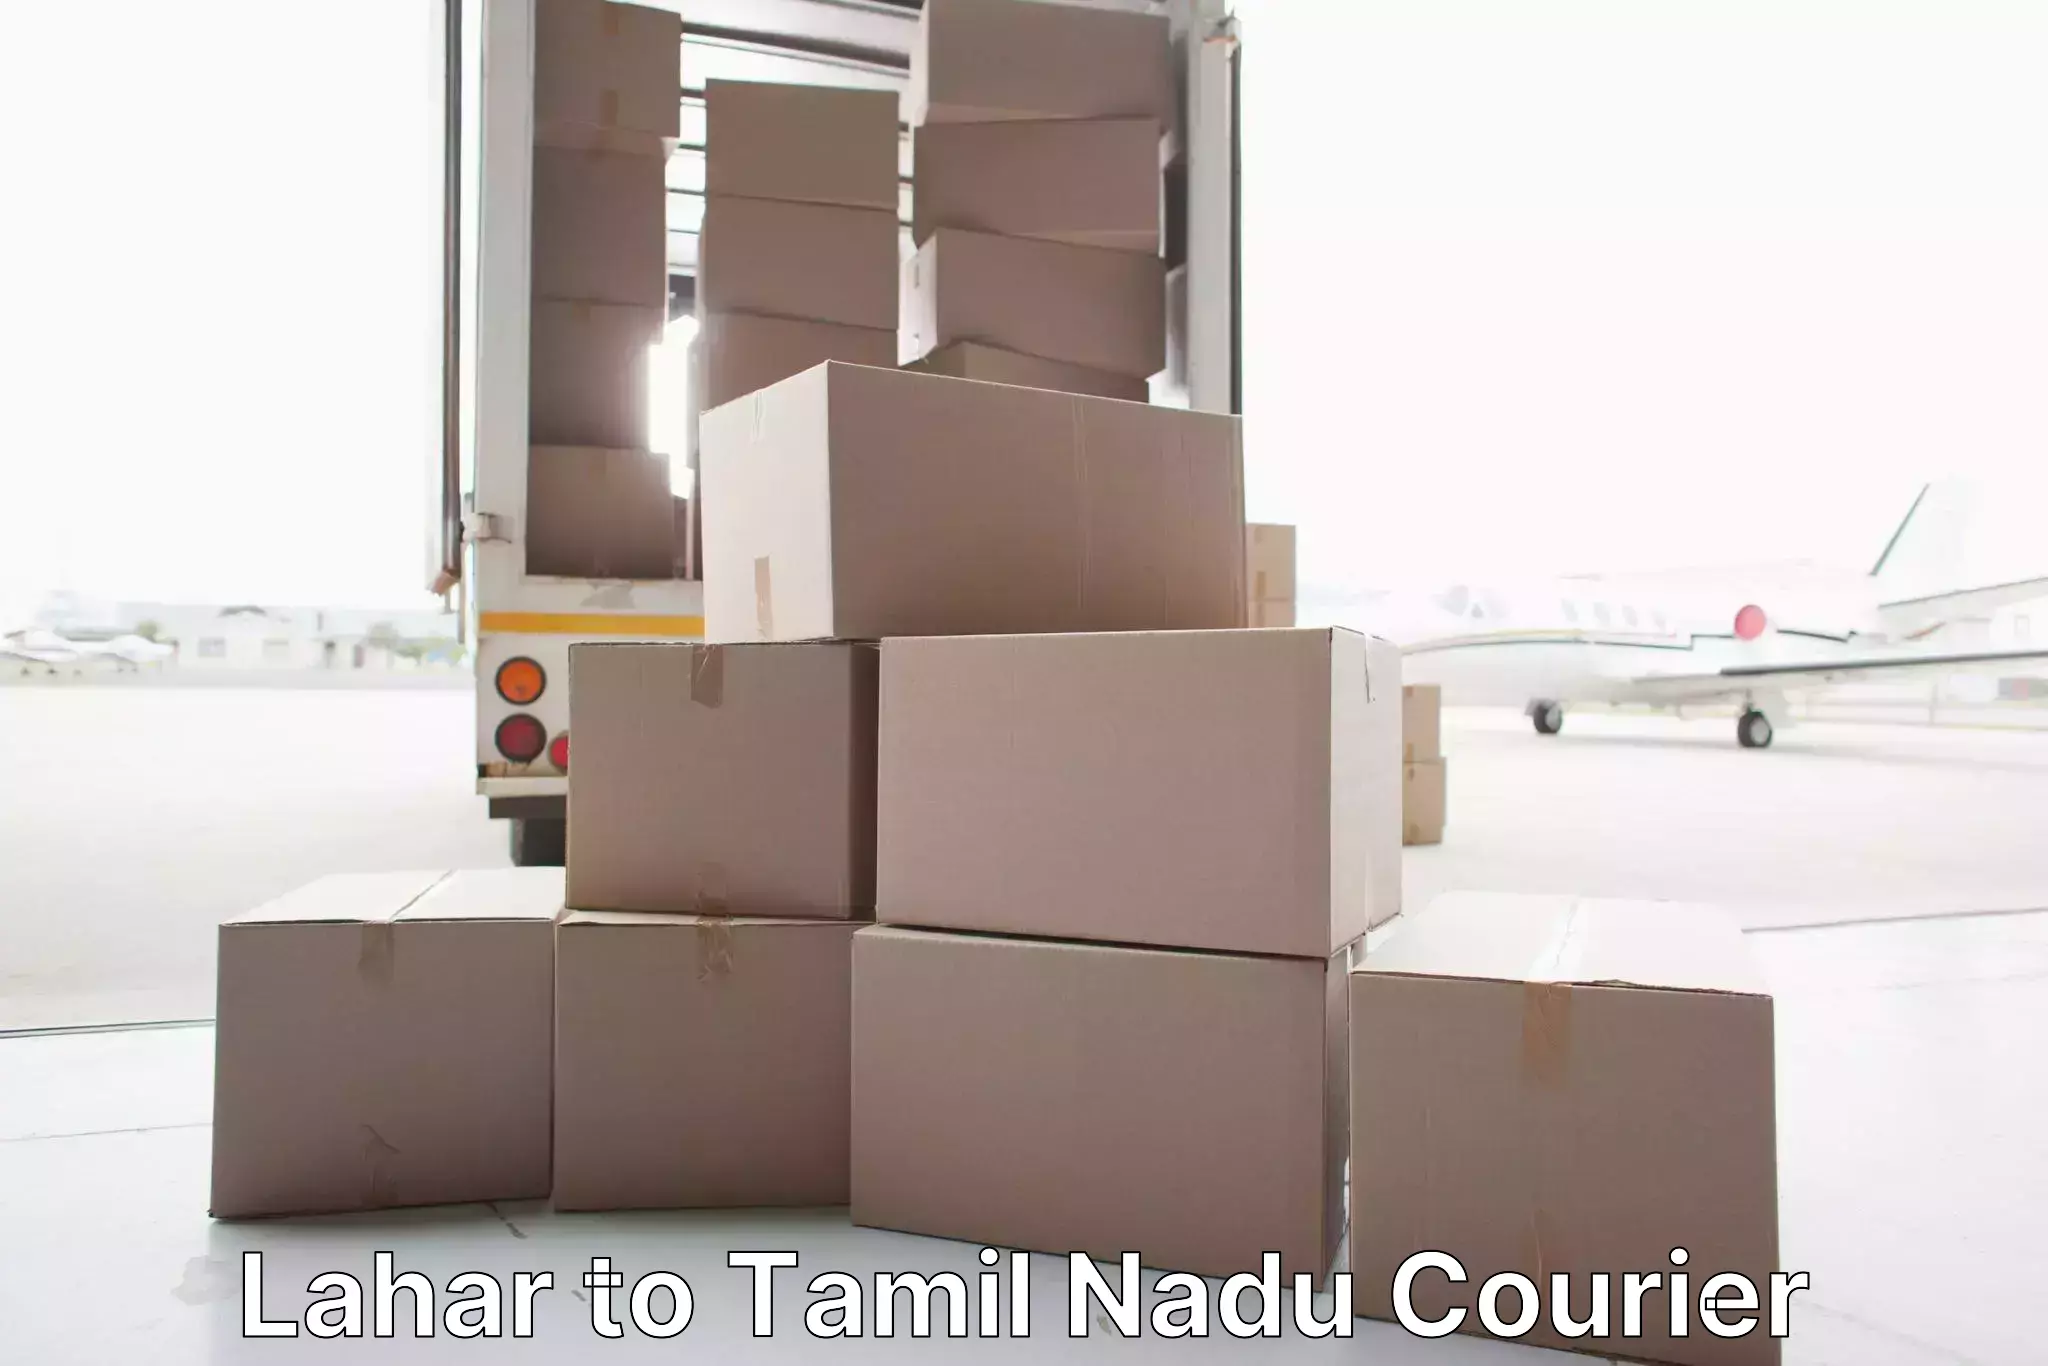 Efficient relocation services Lahar to Tiruchirappalli